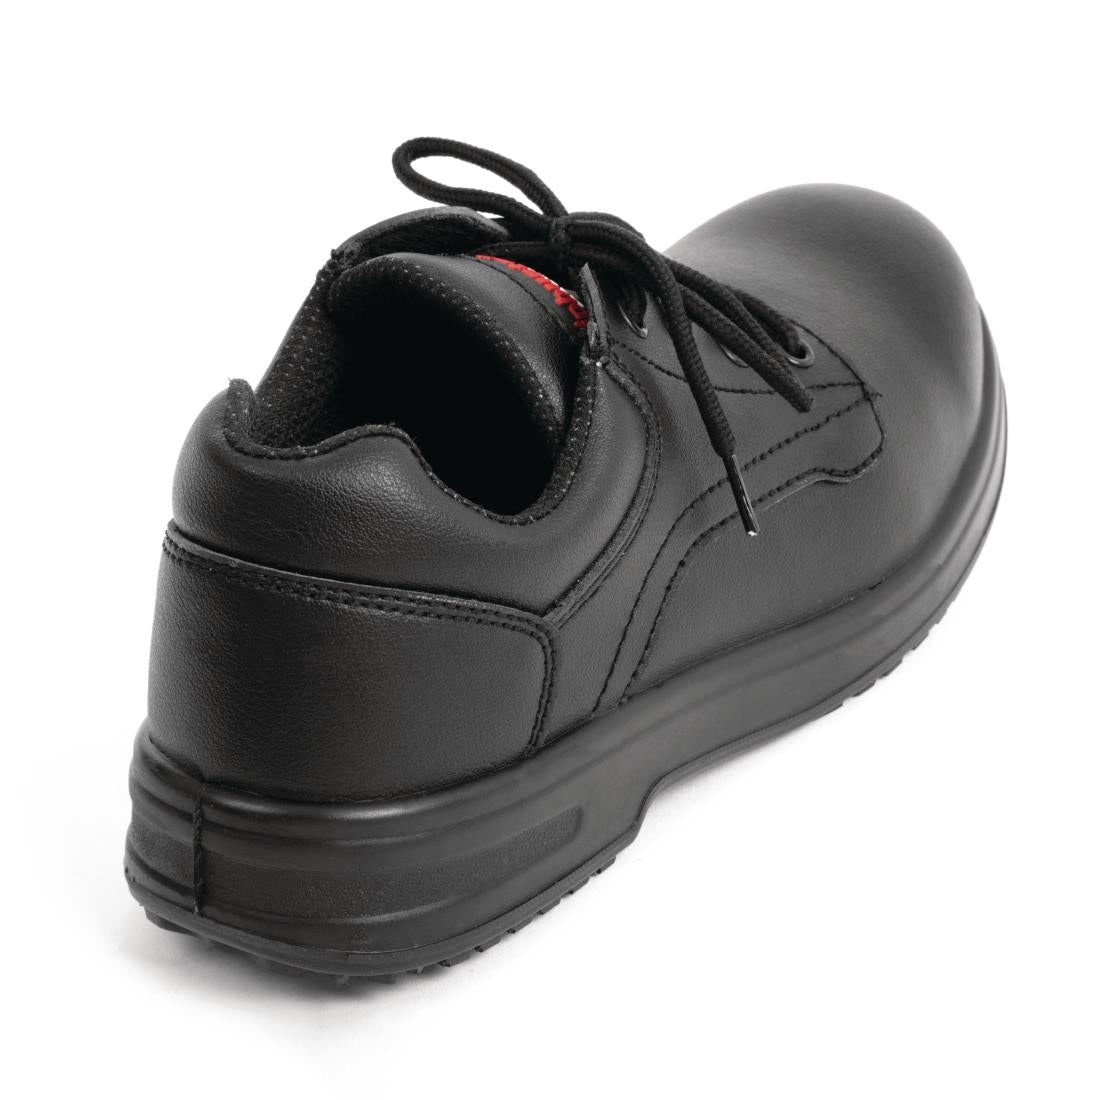 BB497-36 Slipbuster Basic Safety Shoe Toe Cap